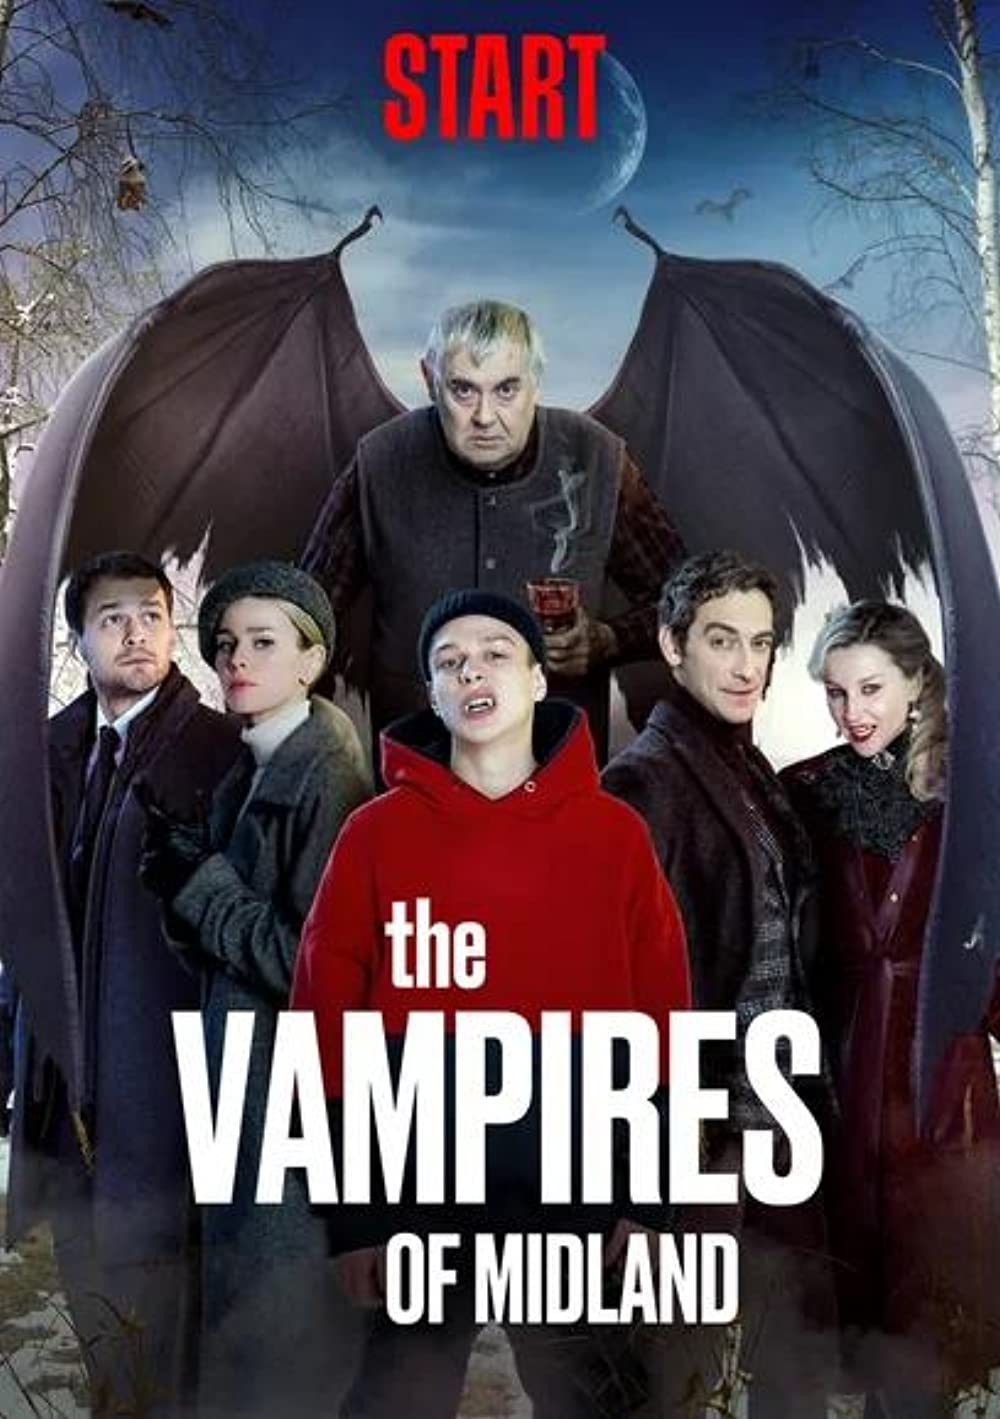 The Vampires Of Midland Aka Vampiry sredney polosy (2021)